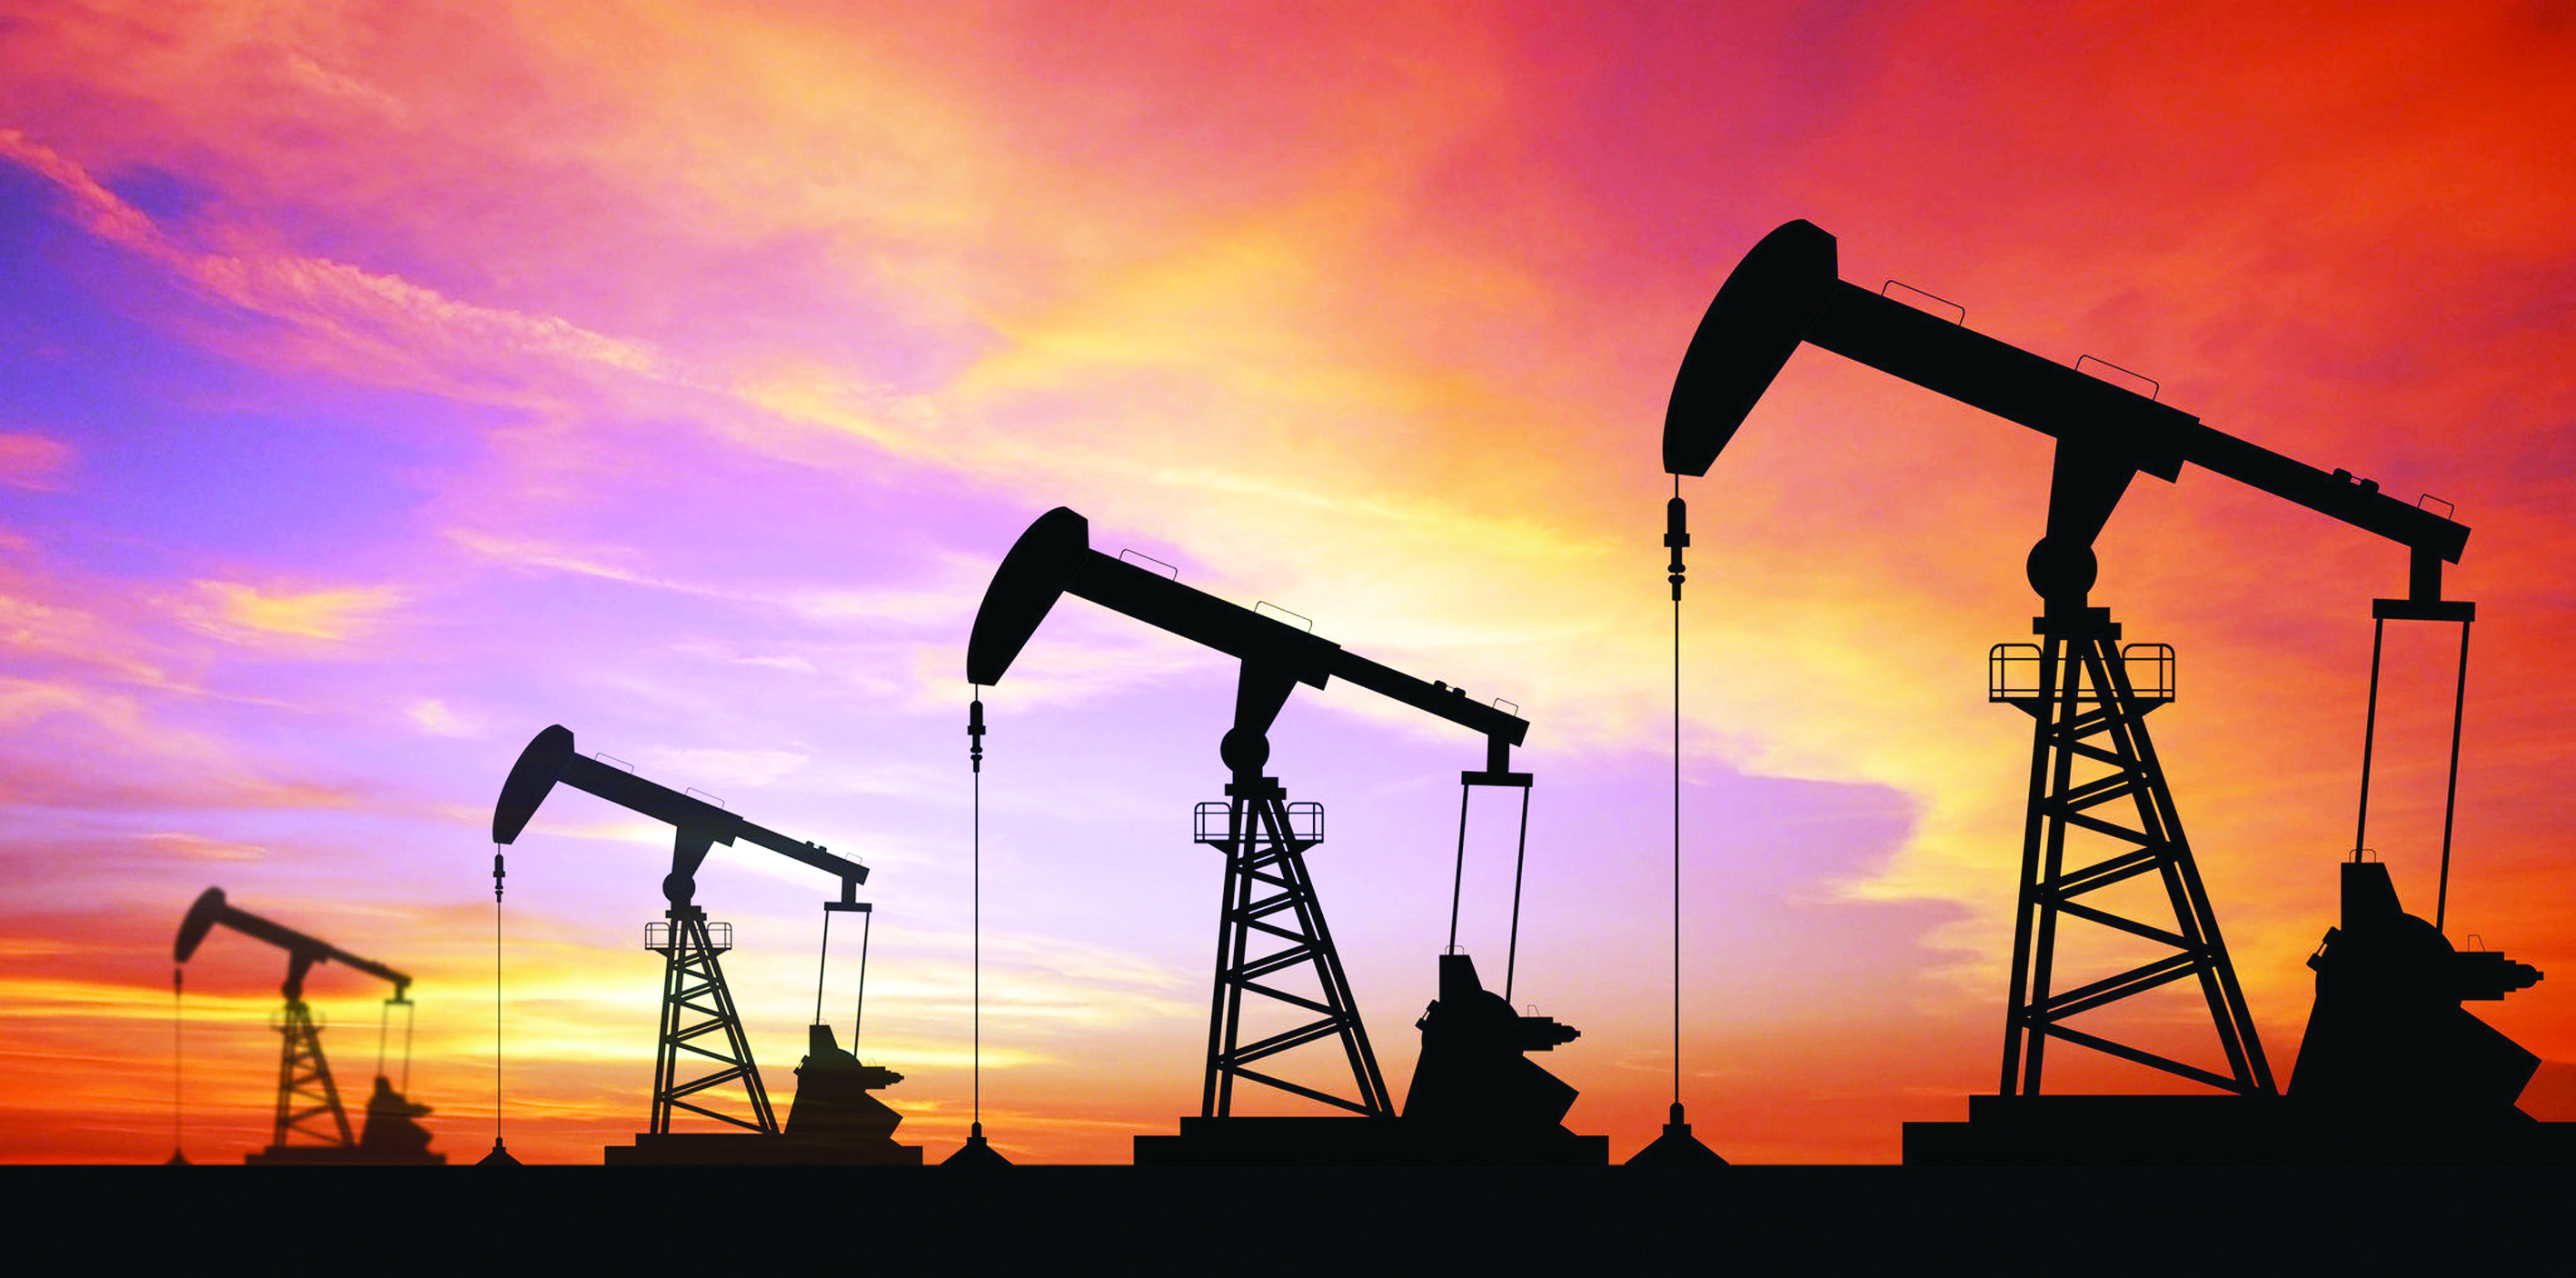 ارتفاع إنتاج العراق يهوي باسعار النفط